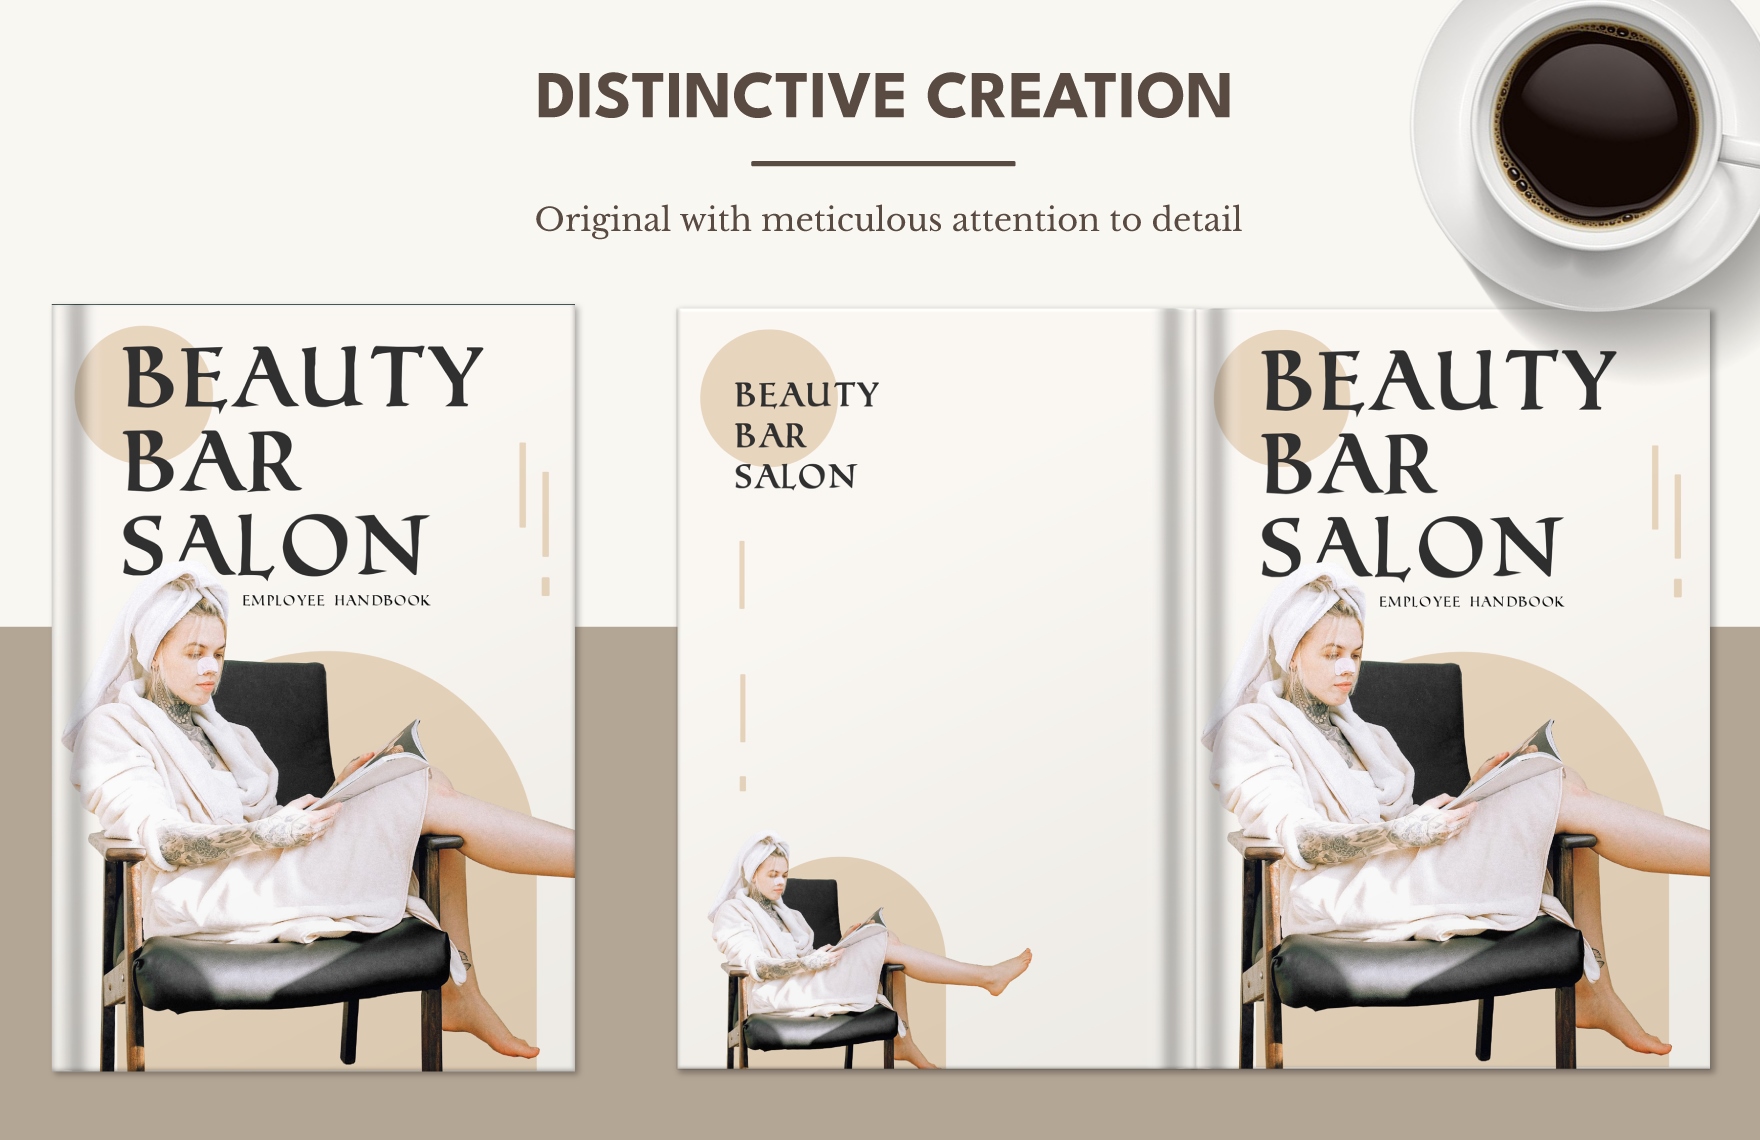 Beauty Salon Employee Handbook Template